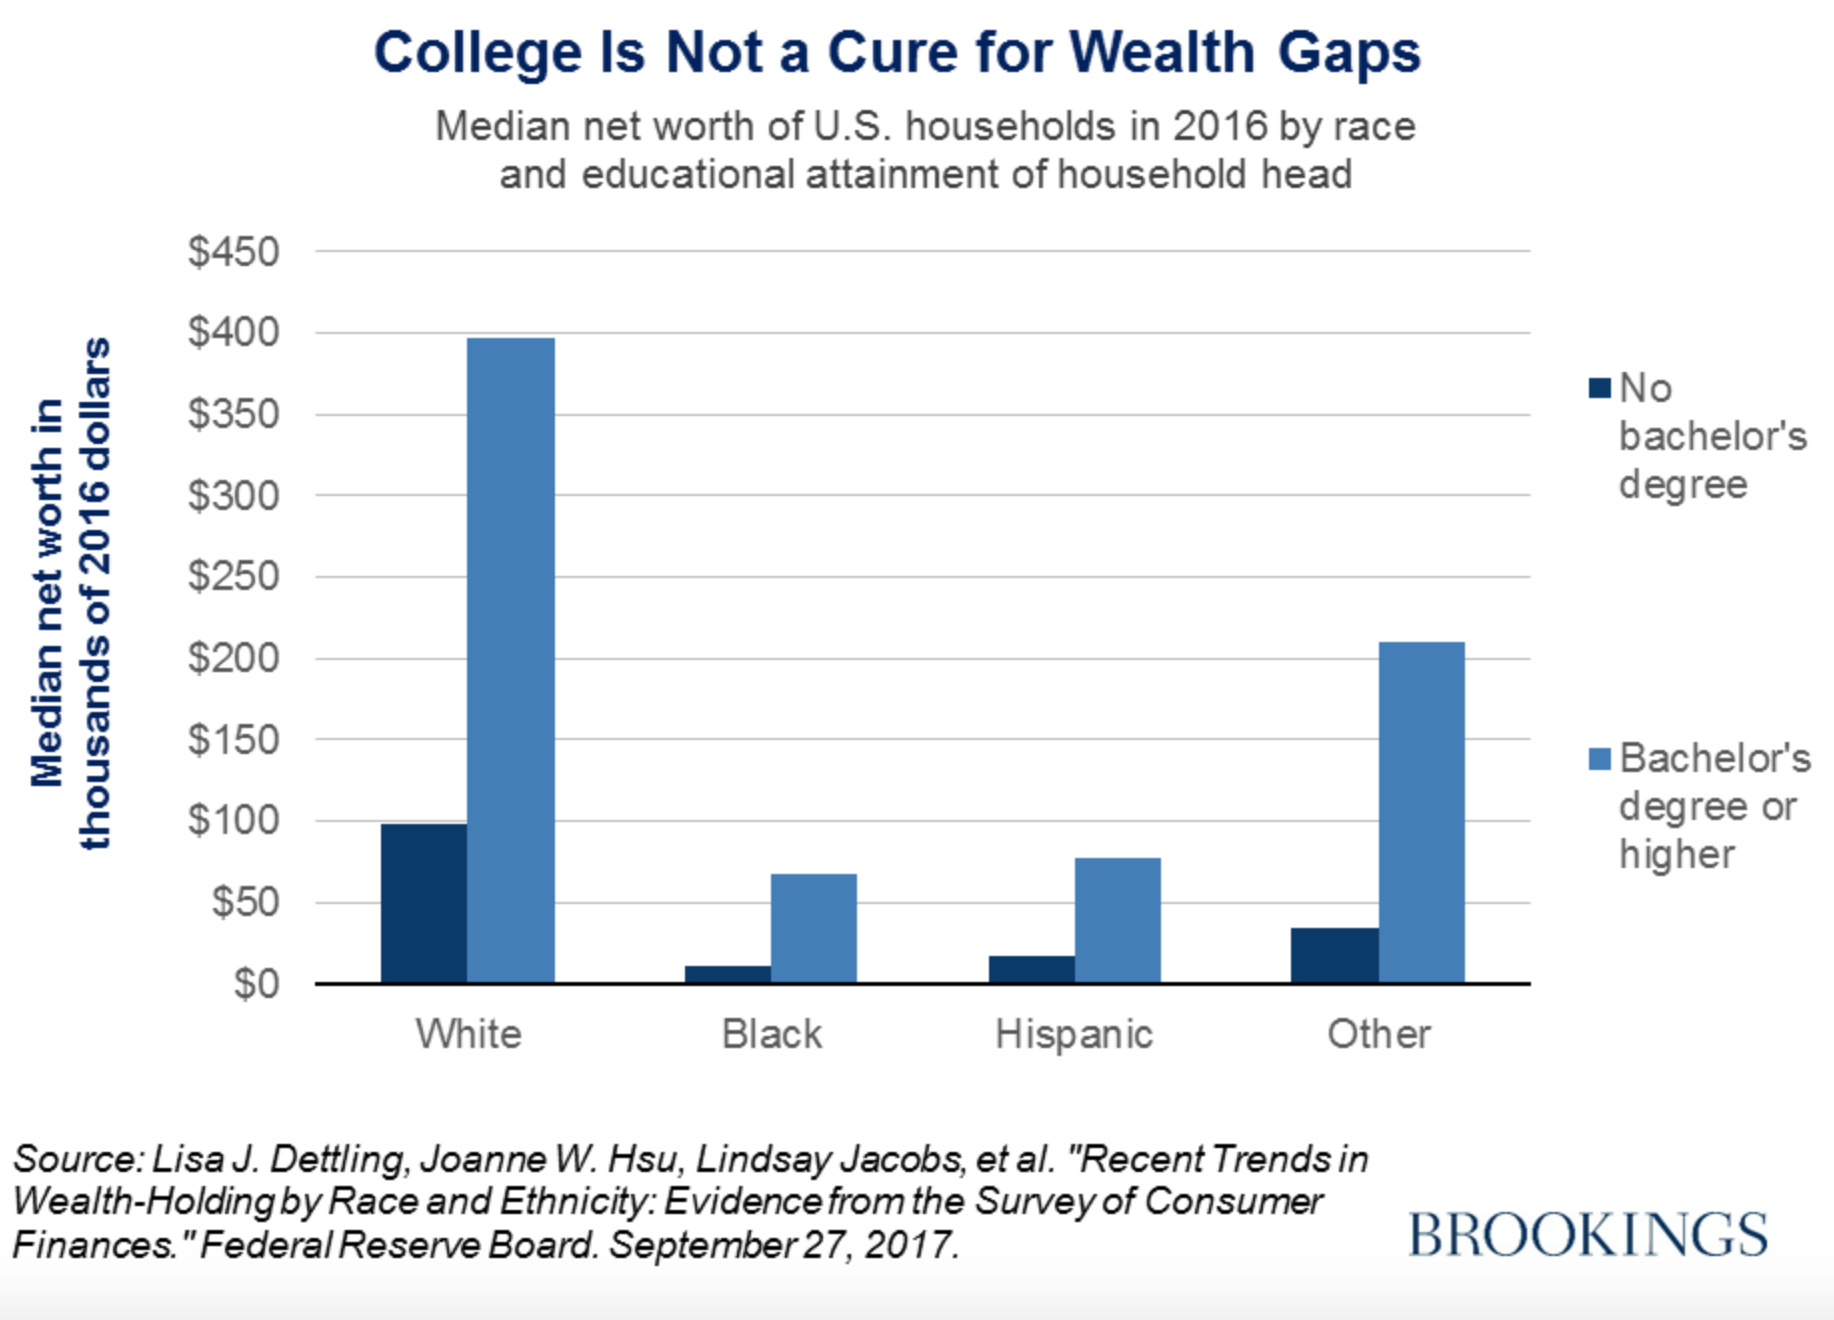 Gráfico que muestra que el hecho de haber obtenido un título universitario no se traduce en una gran mejora económica para la población negra, en contraste con el gran avance que supone para la población blanca. Crédito: Reeves & Guyot (2017).